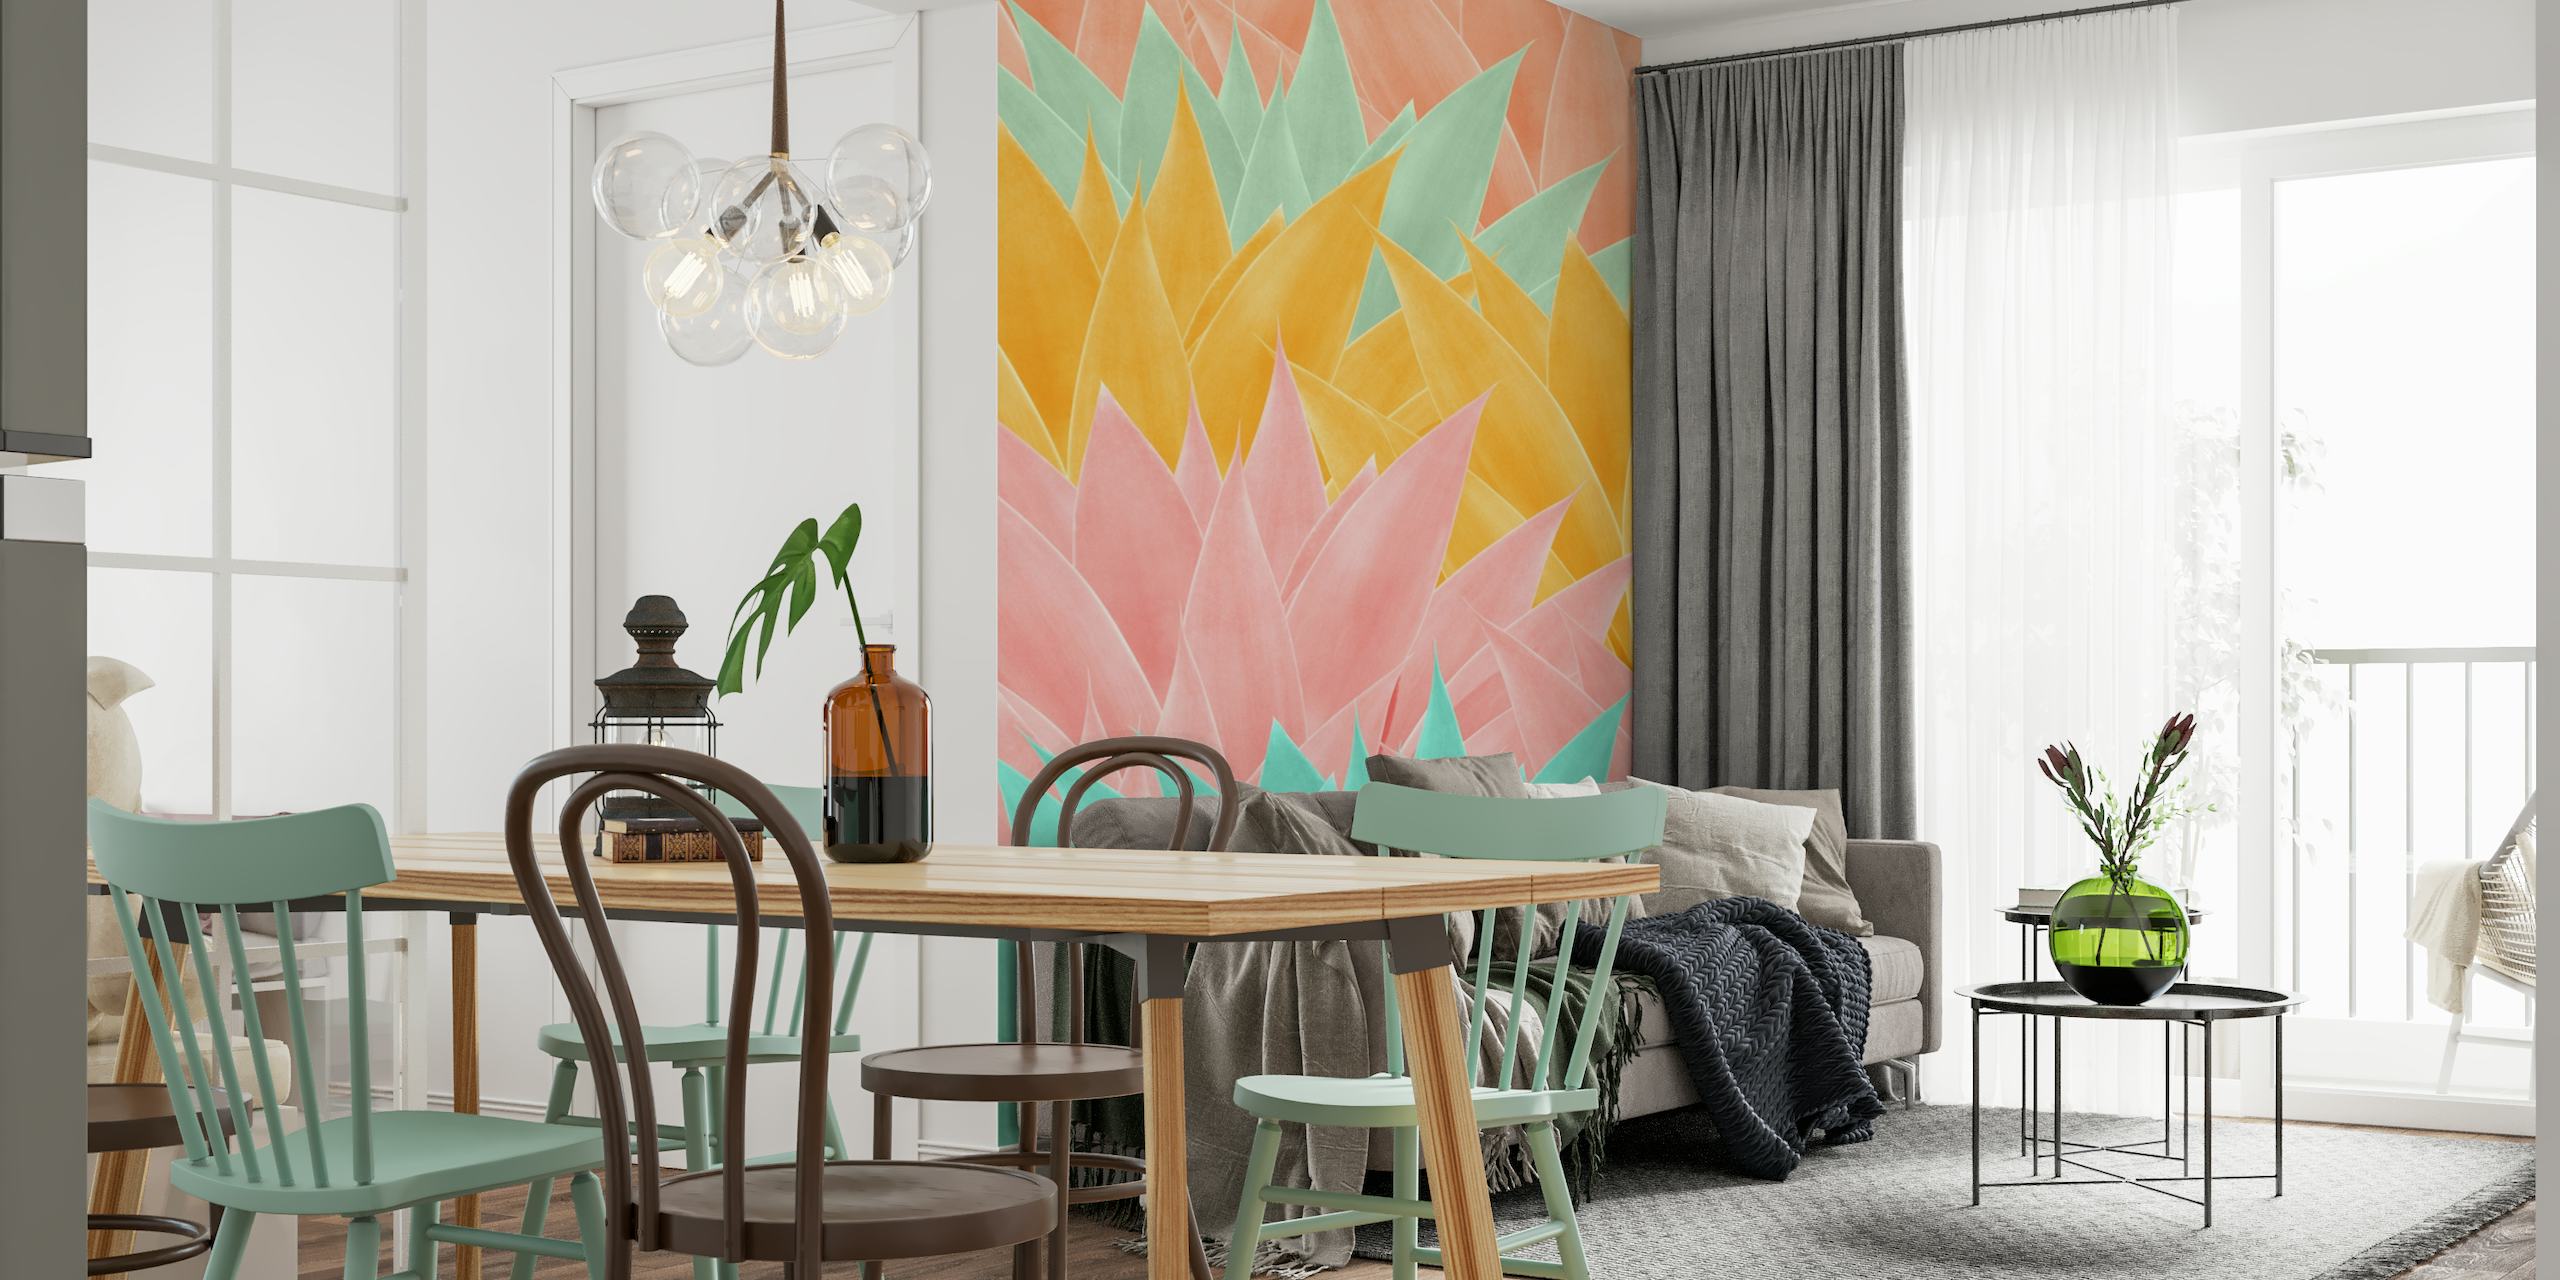 Barevná fototapeta se vzorem listů agáve v odstínech růžové, žluté a aqua pro moderní interiérový design.